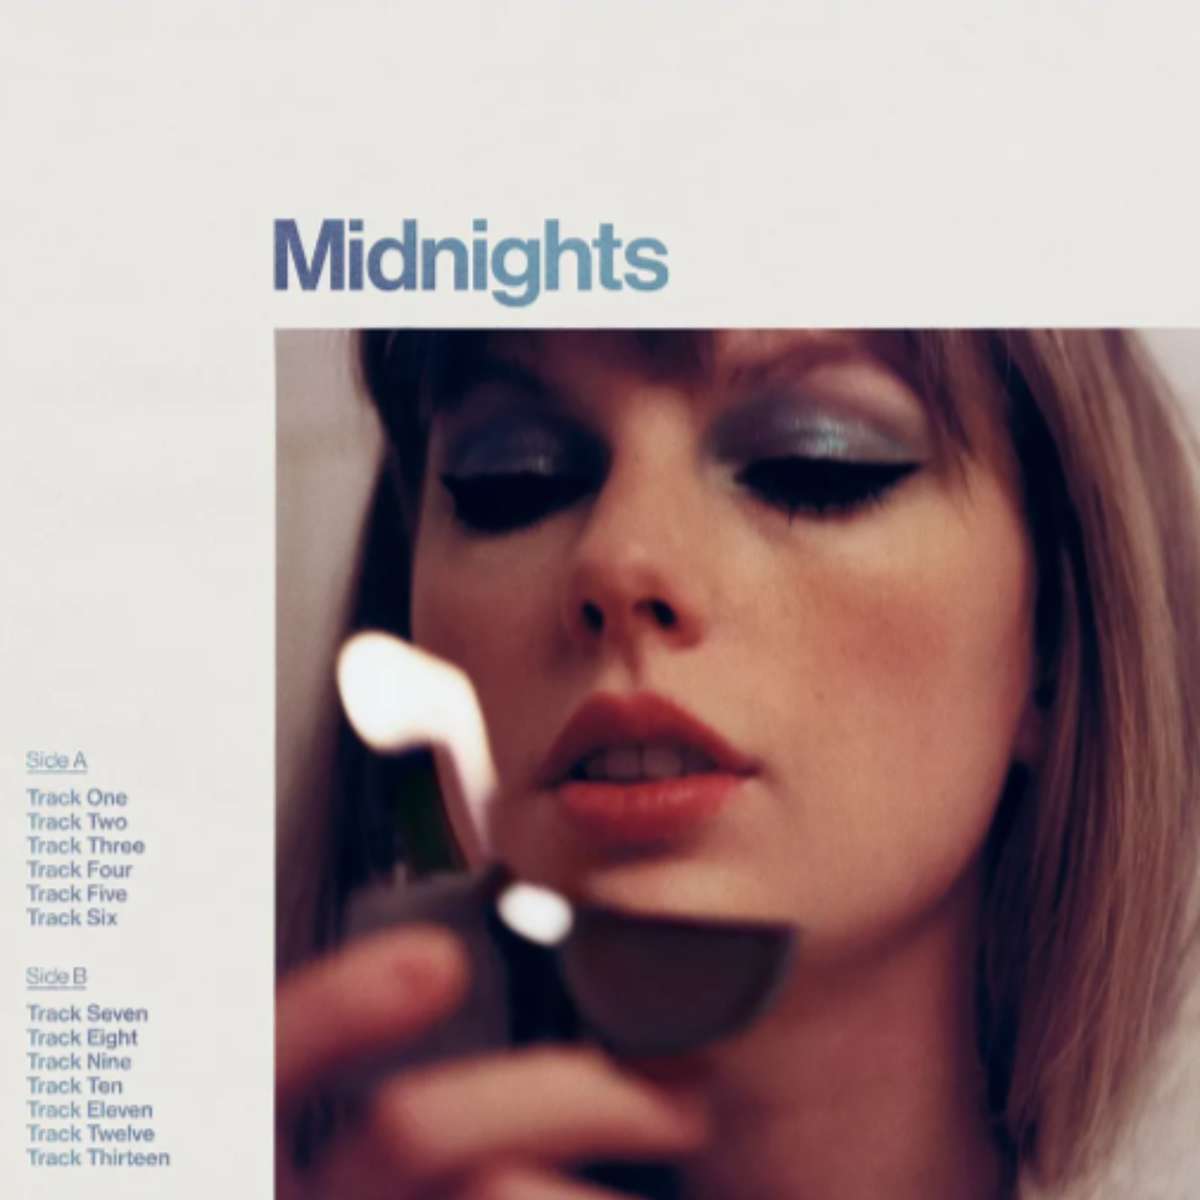 Midnights – okładka albumu Taylor Swift puzzle online ze zdjęcia